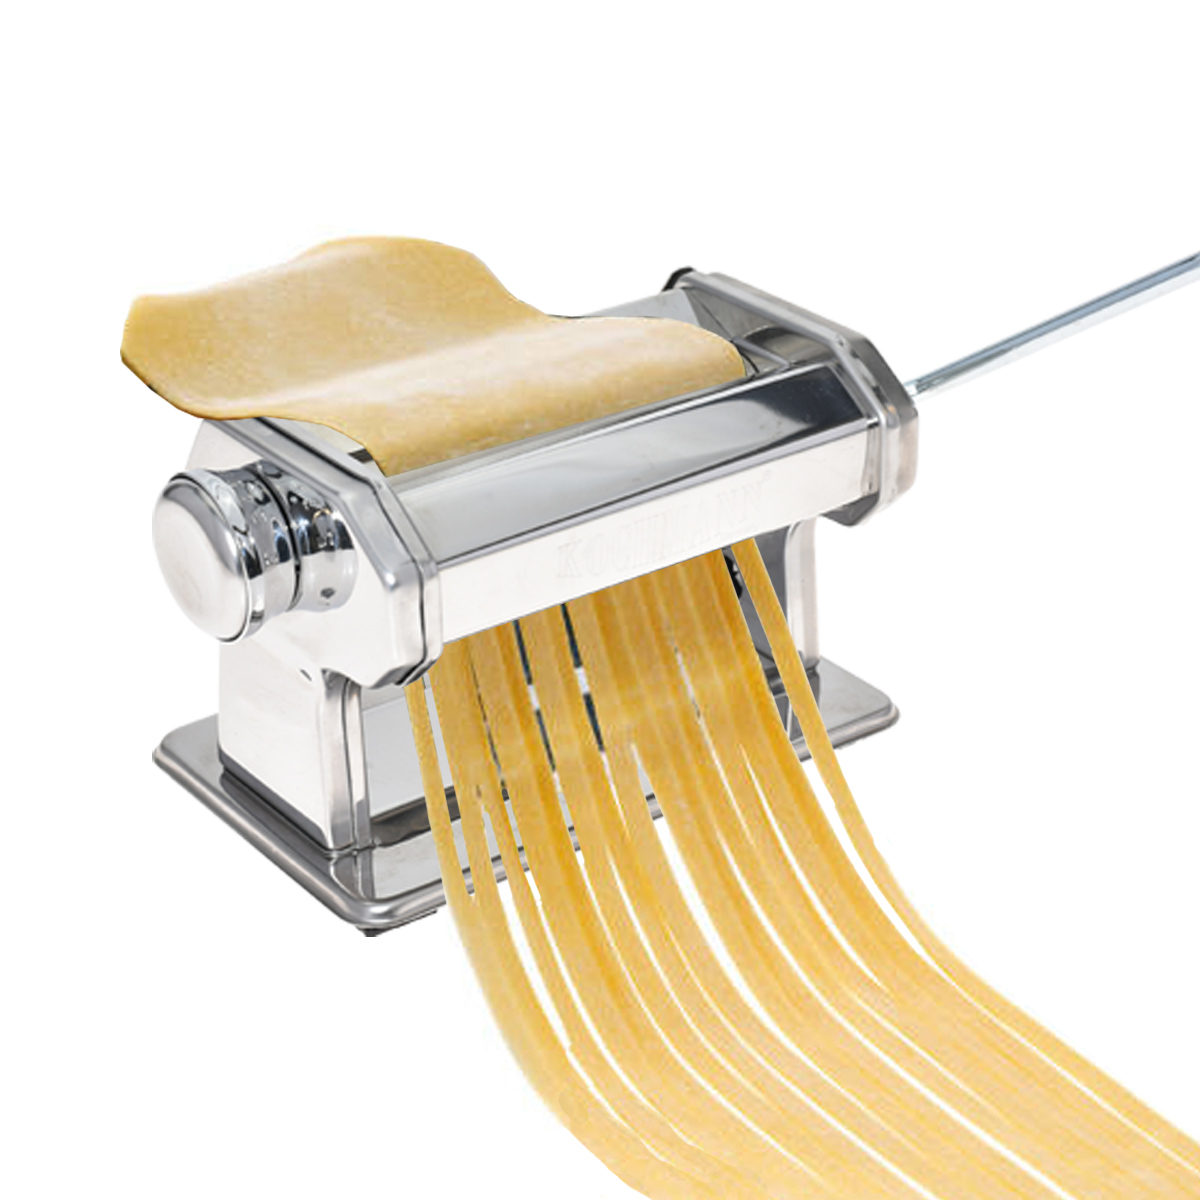 Nudelmaschine aus Edelstahl Pastamaschine Nudel Teig Pasta Maschine